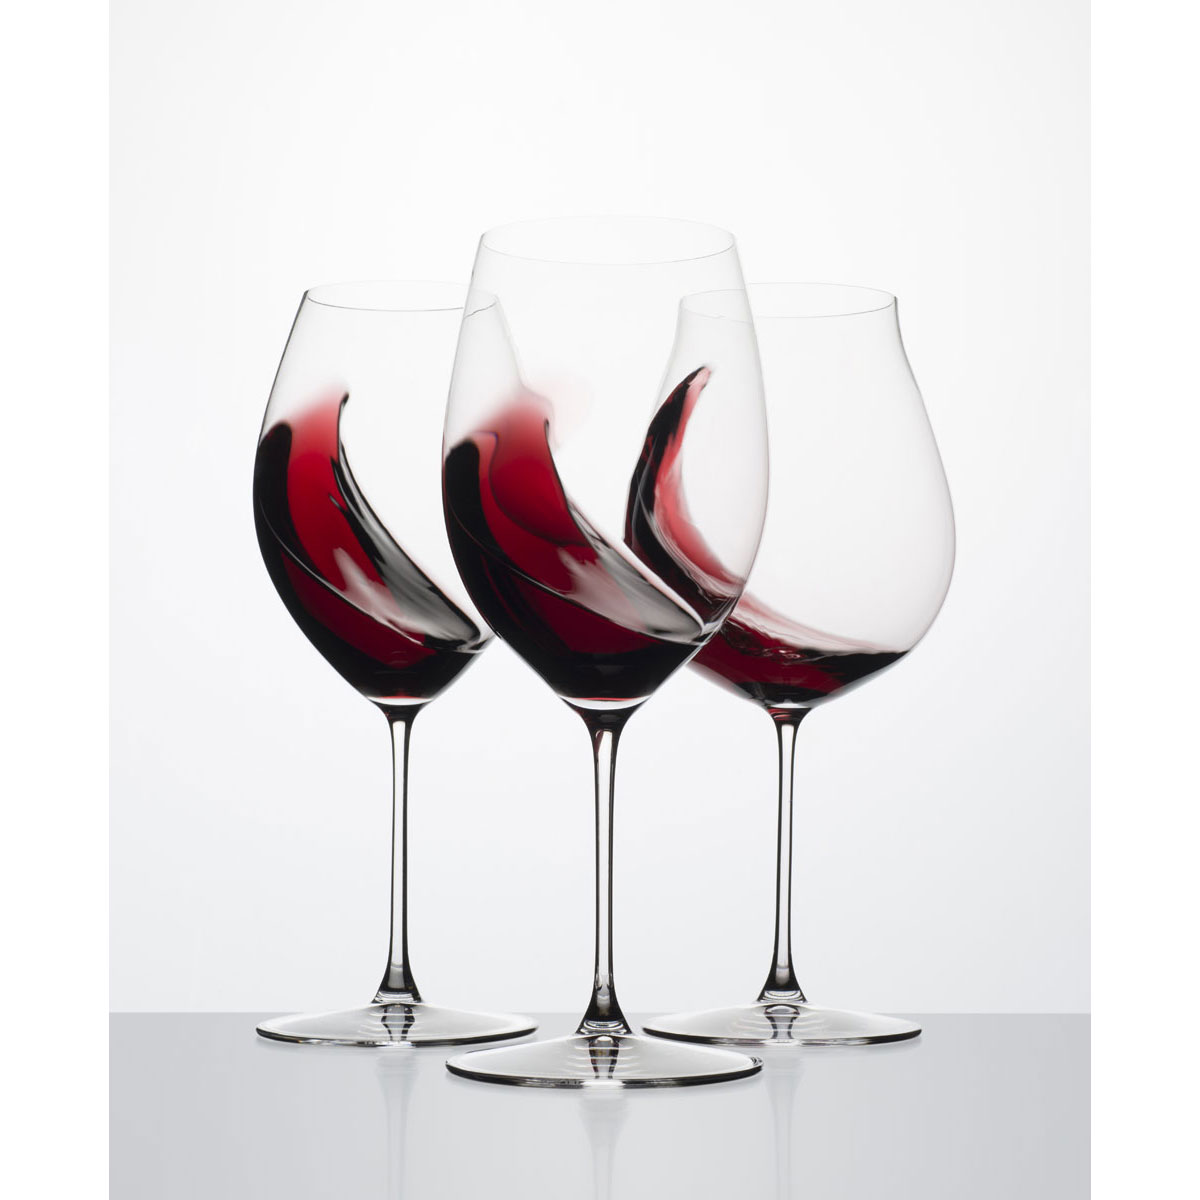 Riedel Veritas Pinot Noir Glasses – Folkways